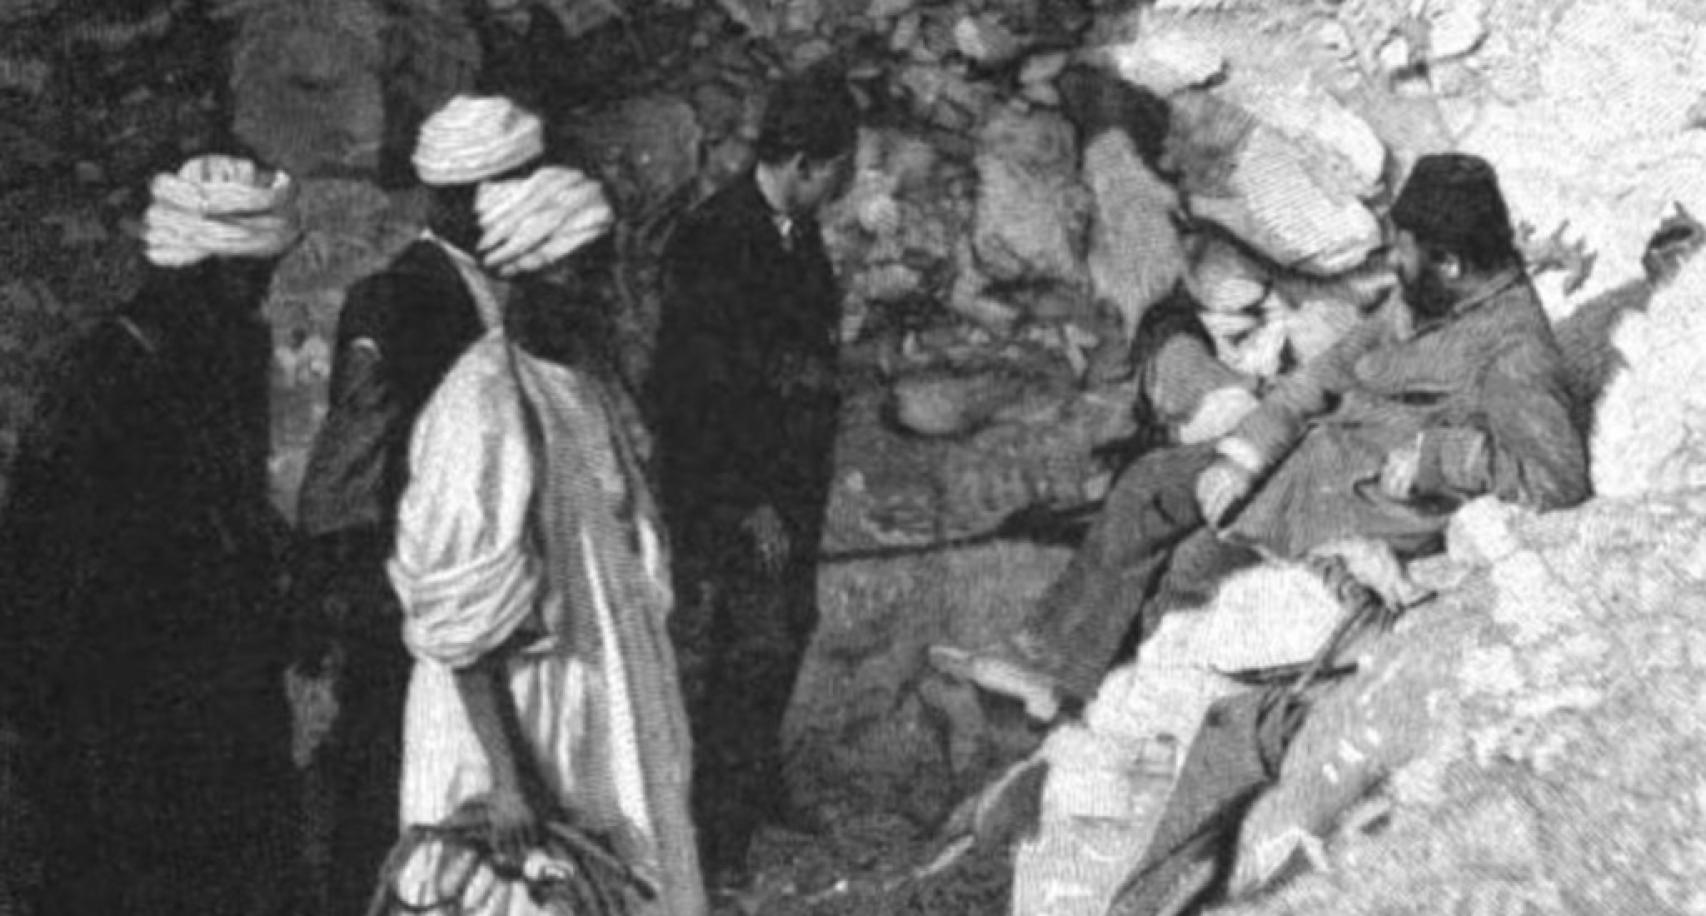 Descubrimiento de la tumba en 1881